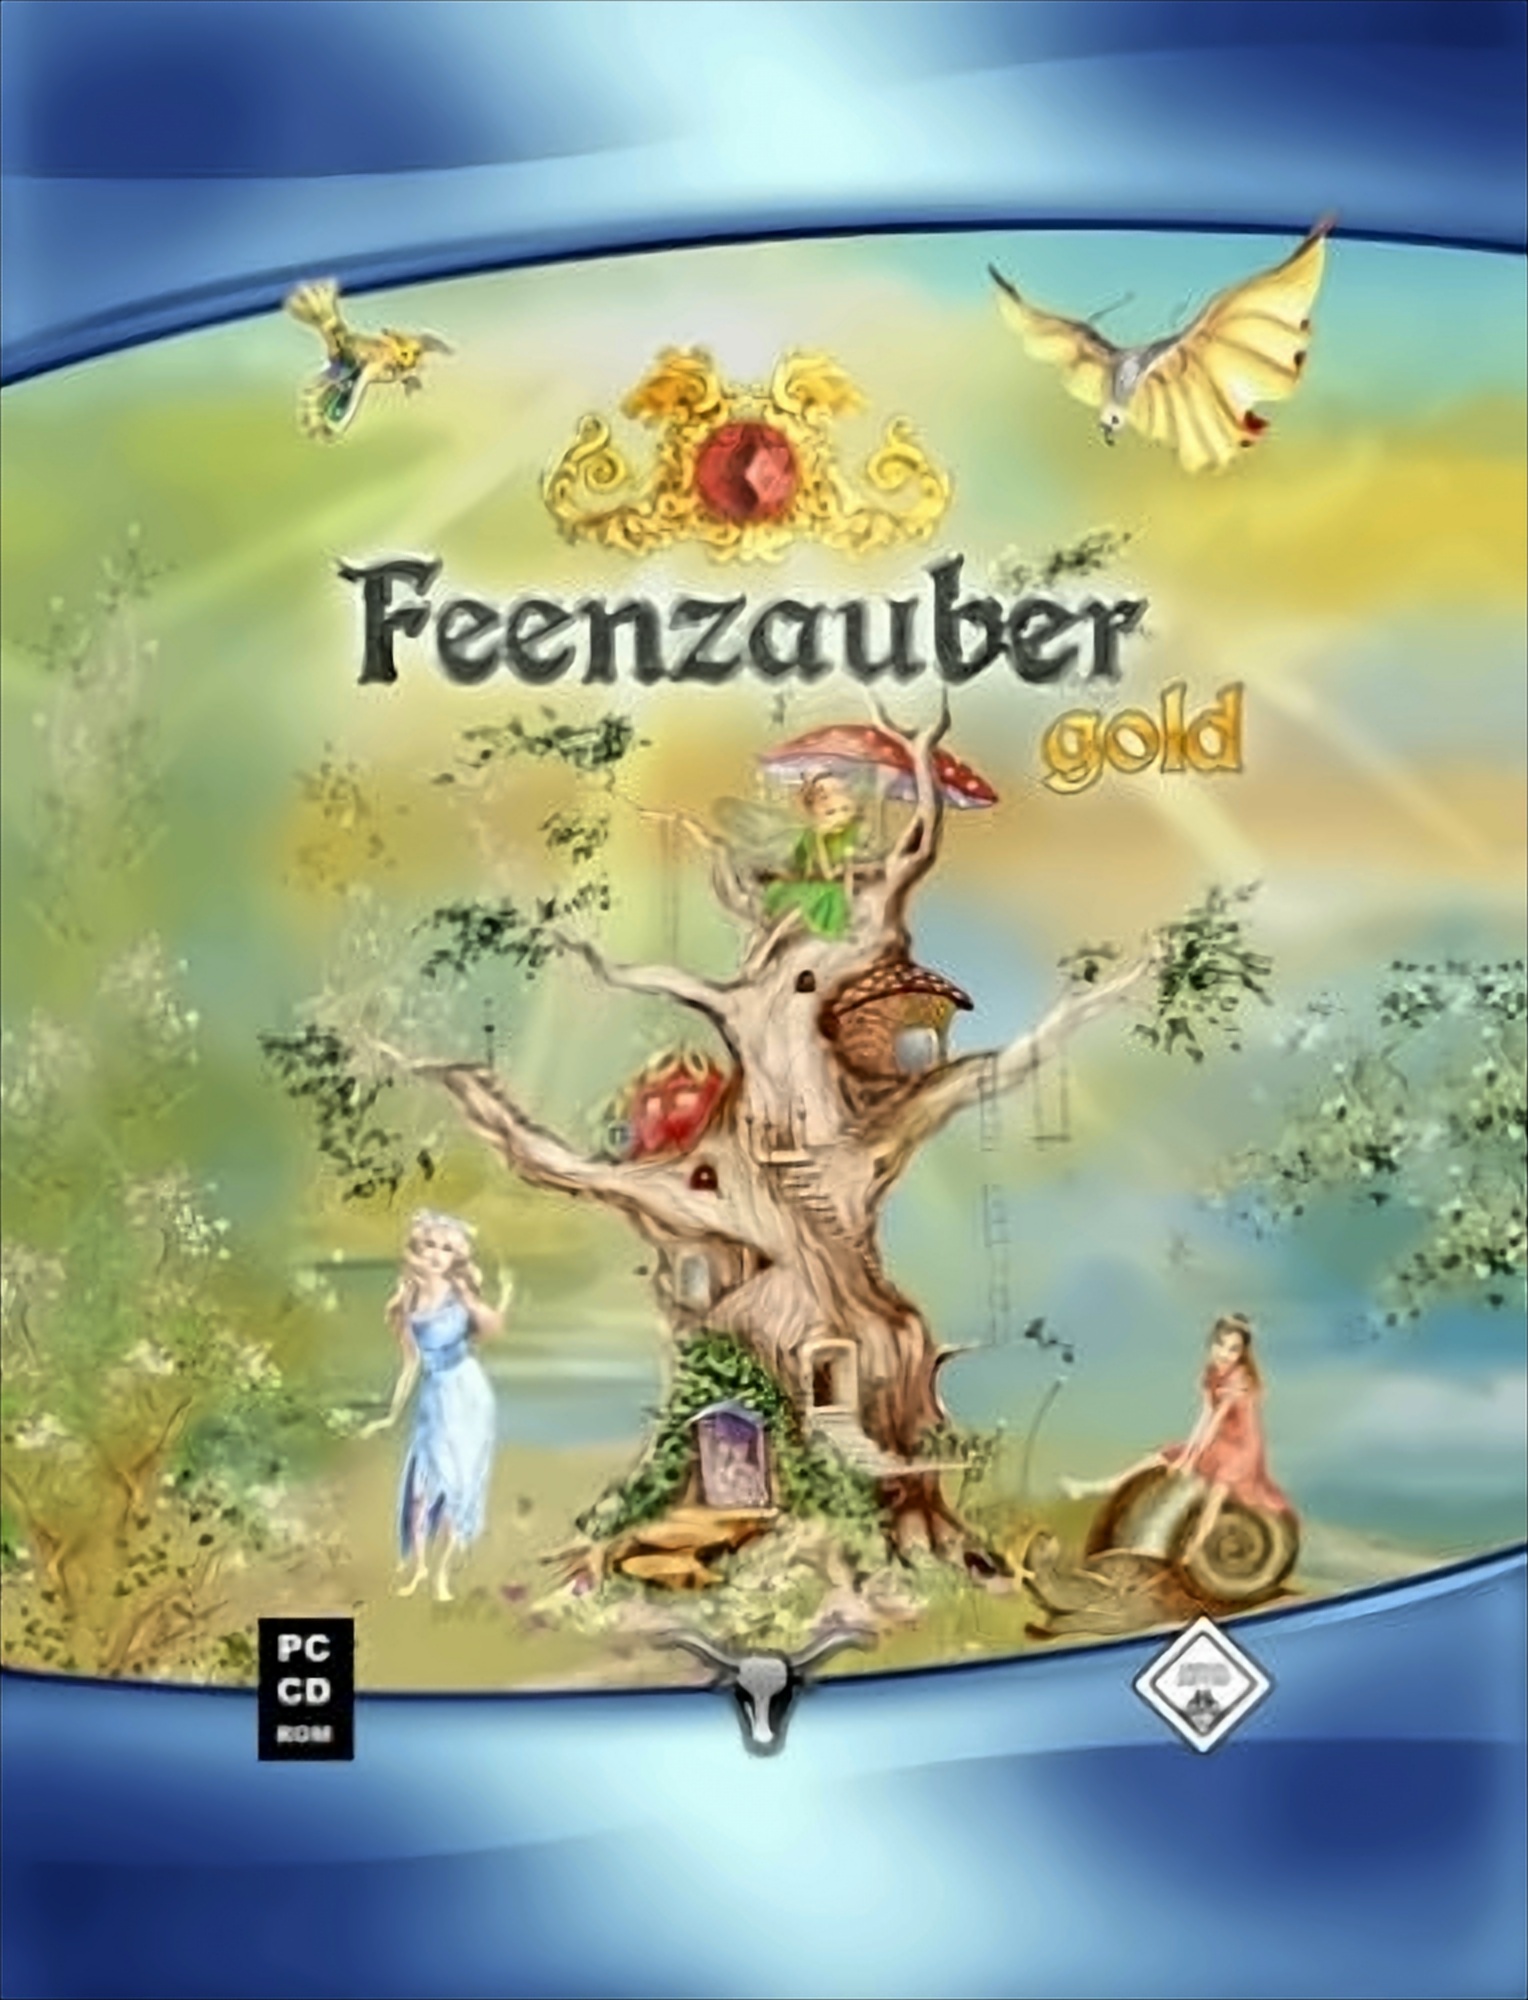 Feenzauber Gold von Koch Media GmbH